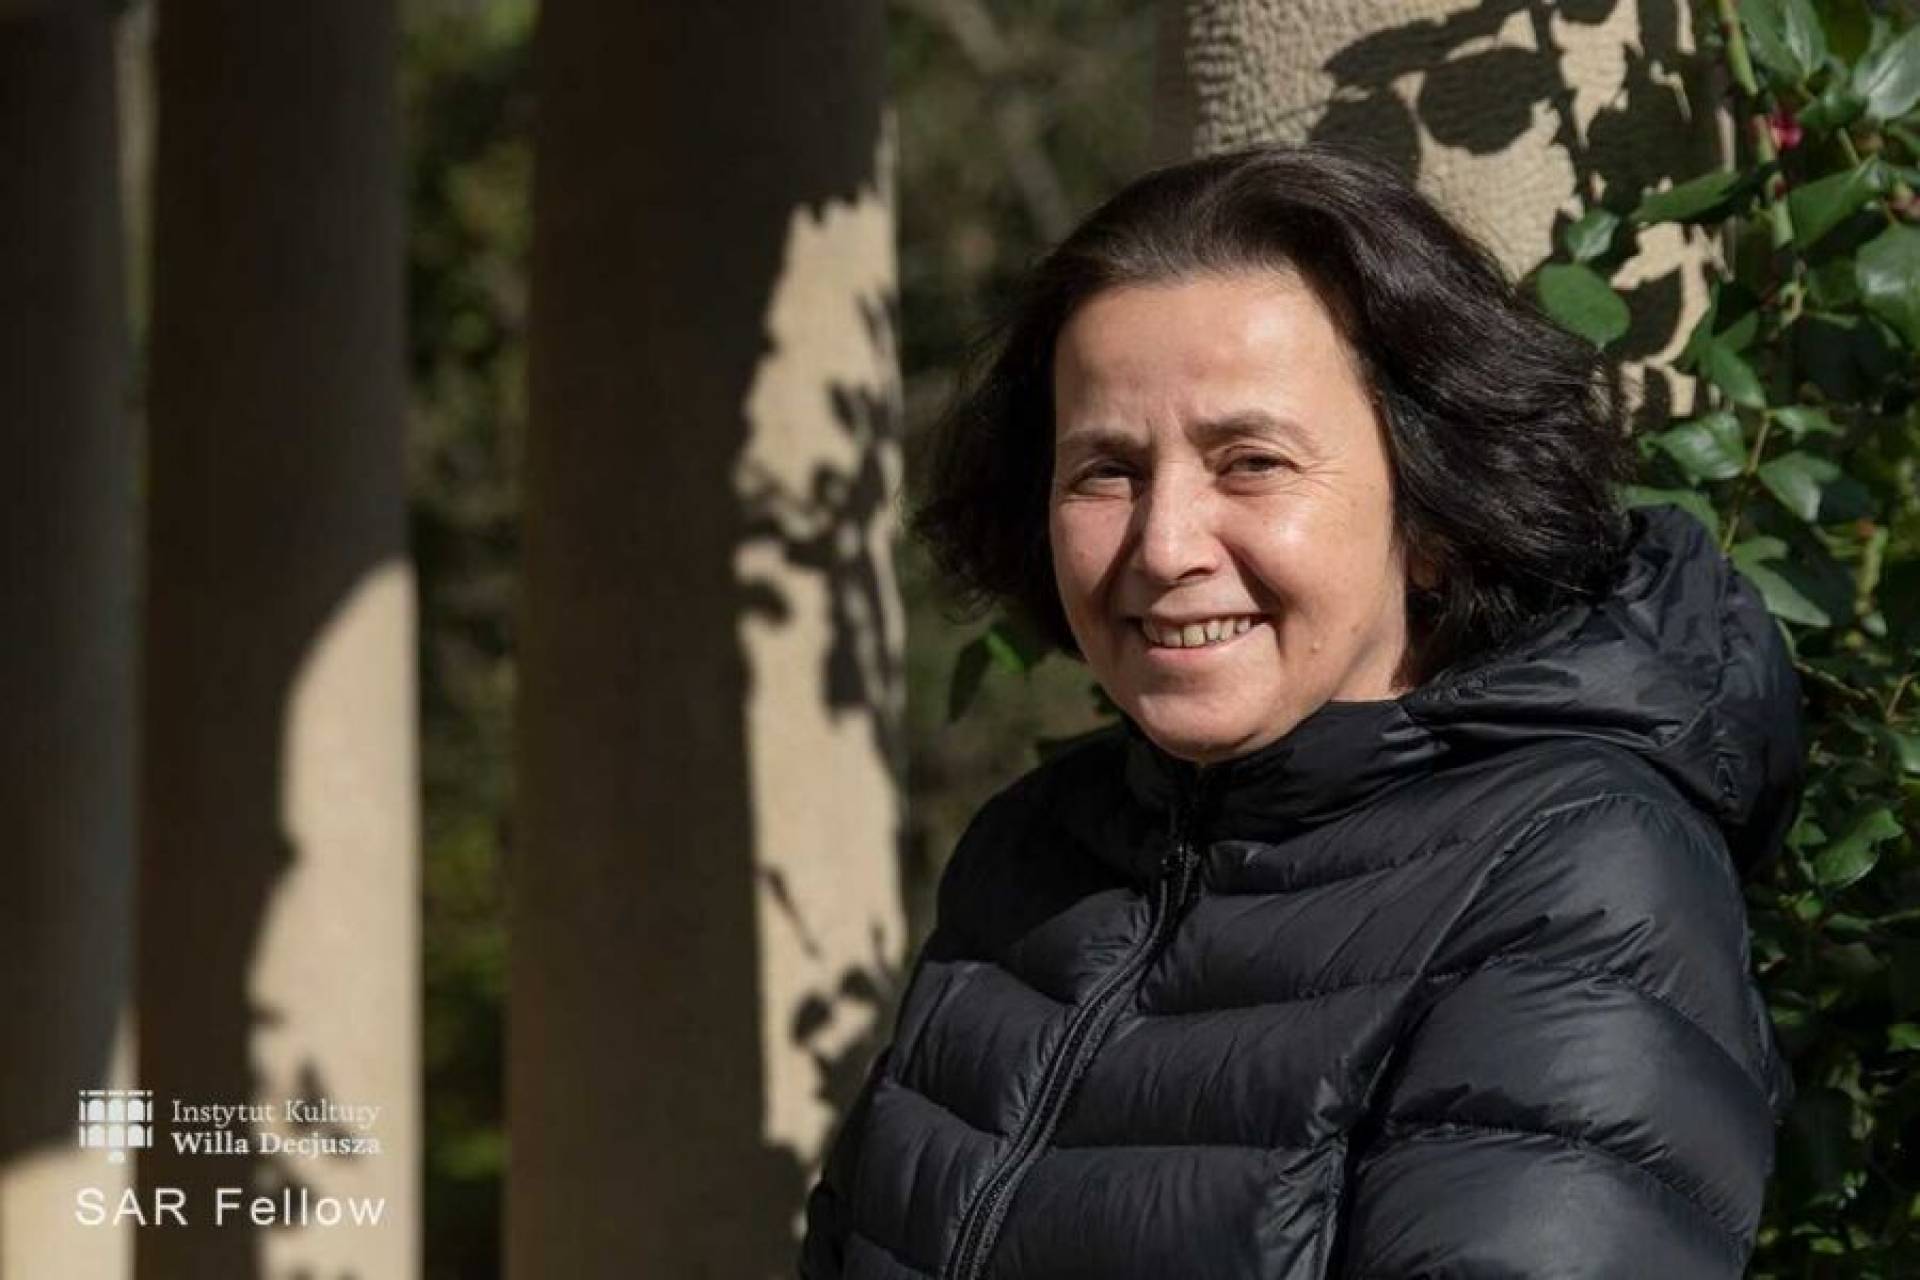 W Turcji jest prześladowana, teraz będzie wykładać w Krakowie